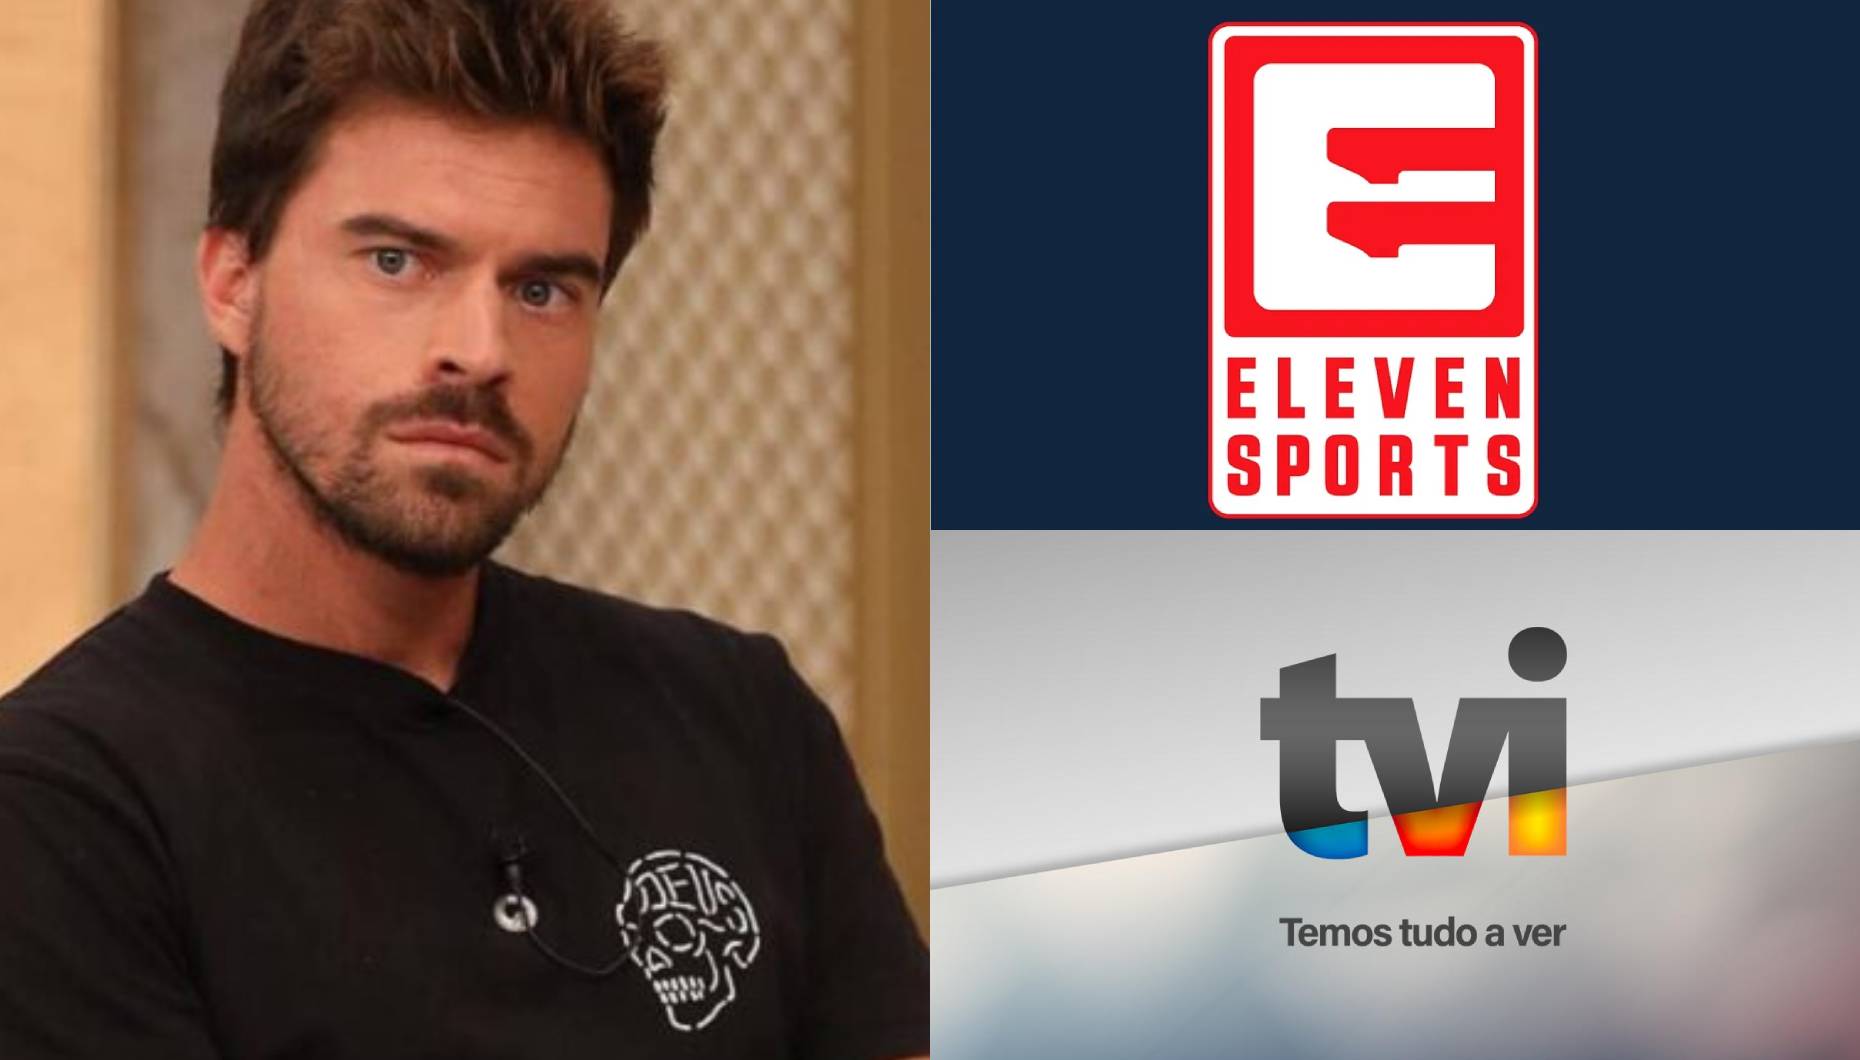 João Monteiro como comentador na Eleven Sports: "É perfeitamente normal que tenha havido uma cunha"